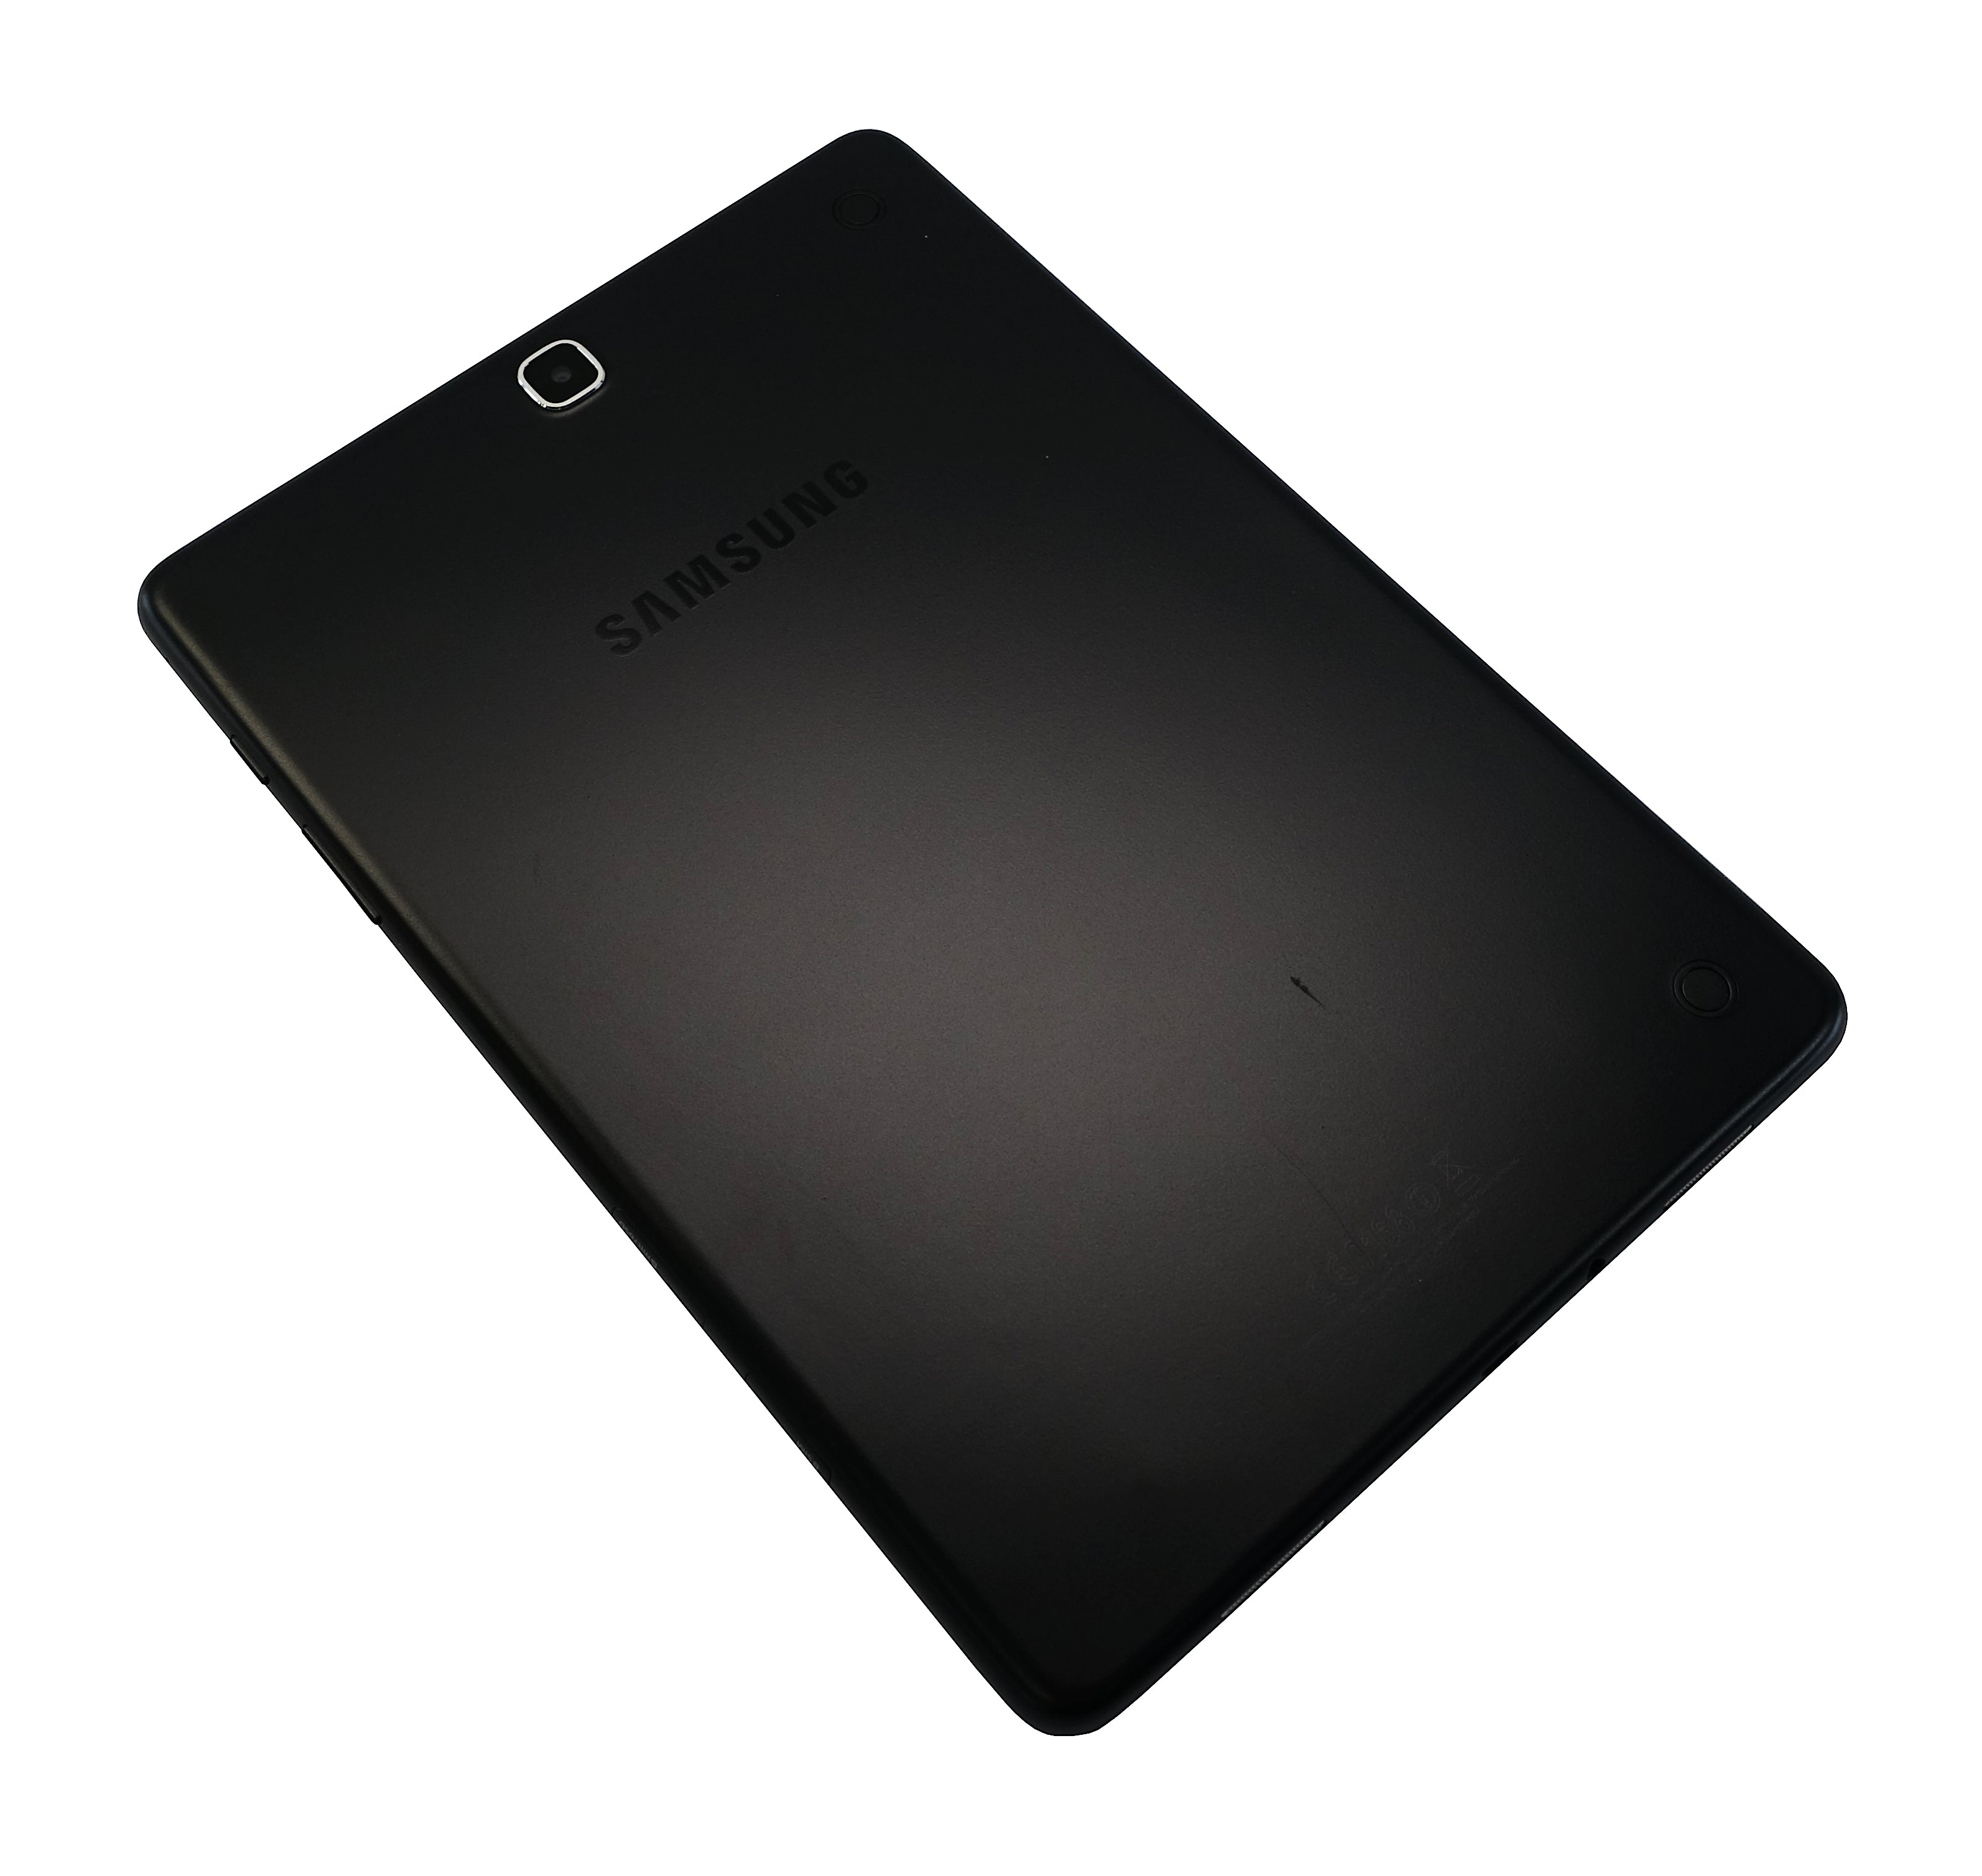 Samsung Galaxy Tab A Tablet, 9.7" 16GB, WiFi+Cellular, Vodafone, Black, SM-T555